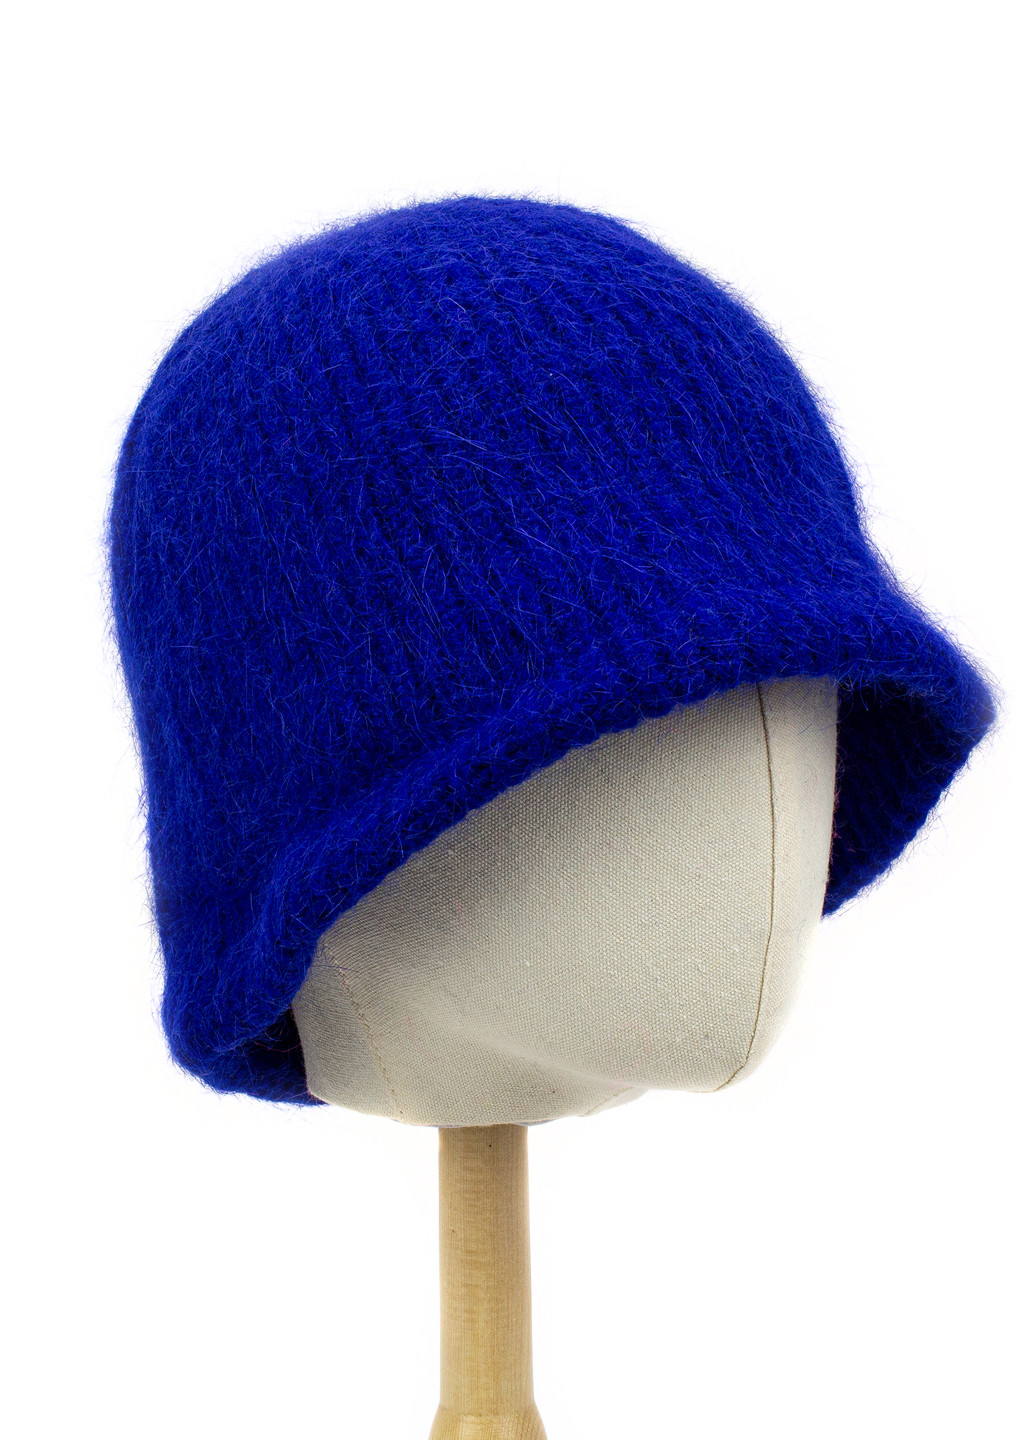 Вязаная шапка-панама из шерсти кролика синяя Corze hc5005 (269342898)